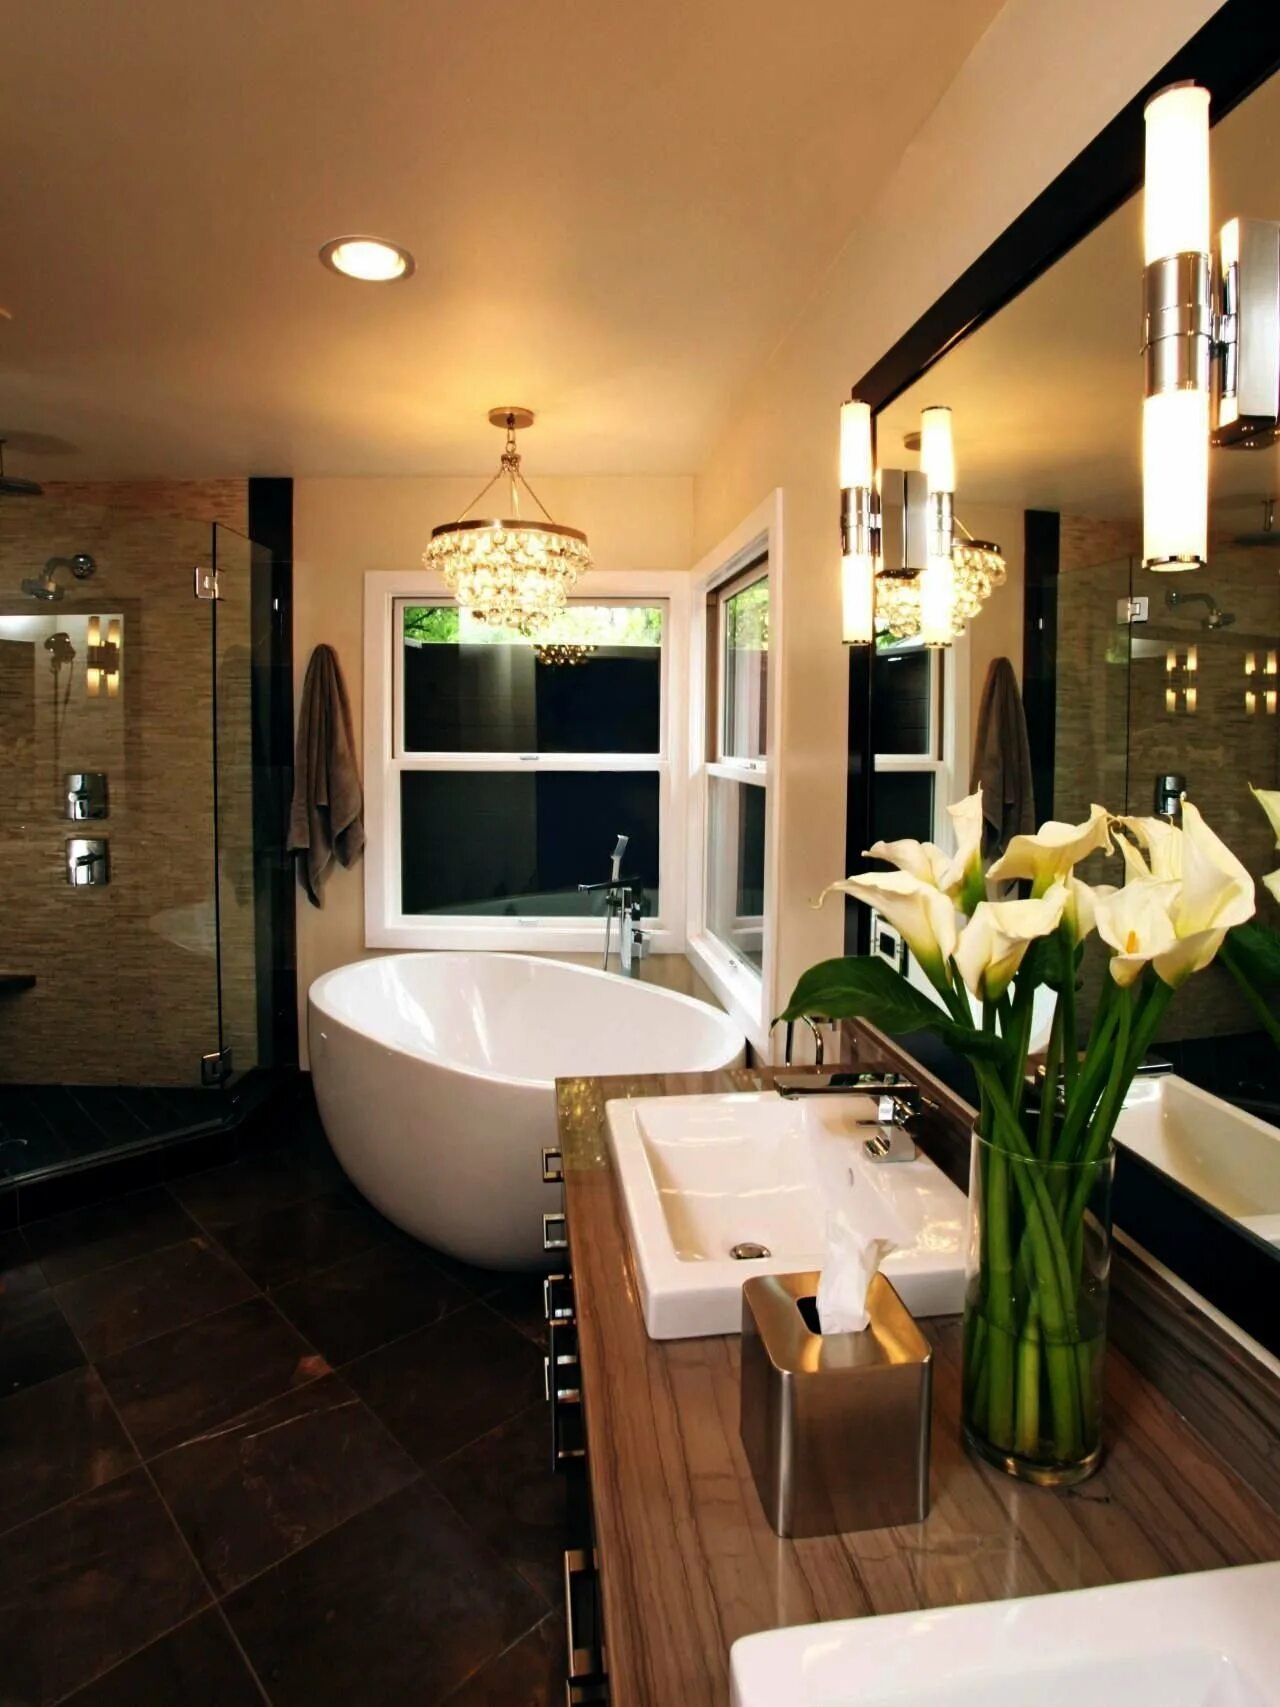 Ванная в квартире. Красивая ванная комната. Интерьеры ванных комнат. Красивые Ванные комнаты в квартире. Шикарный интерьер ванной.